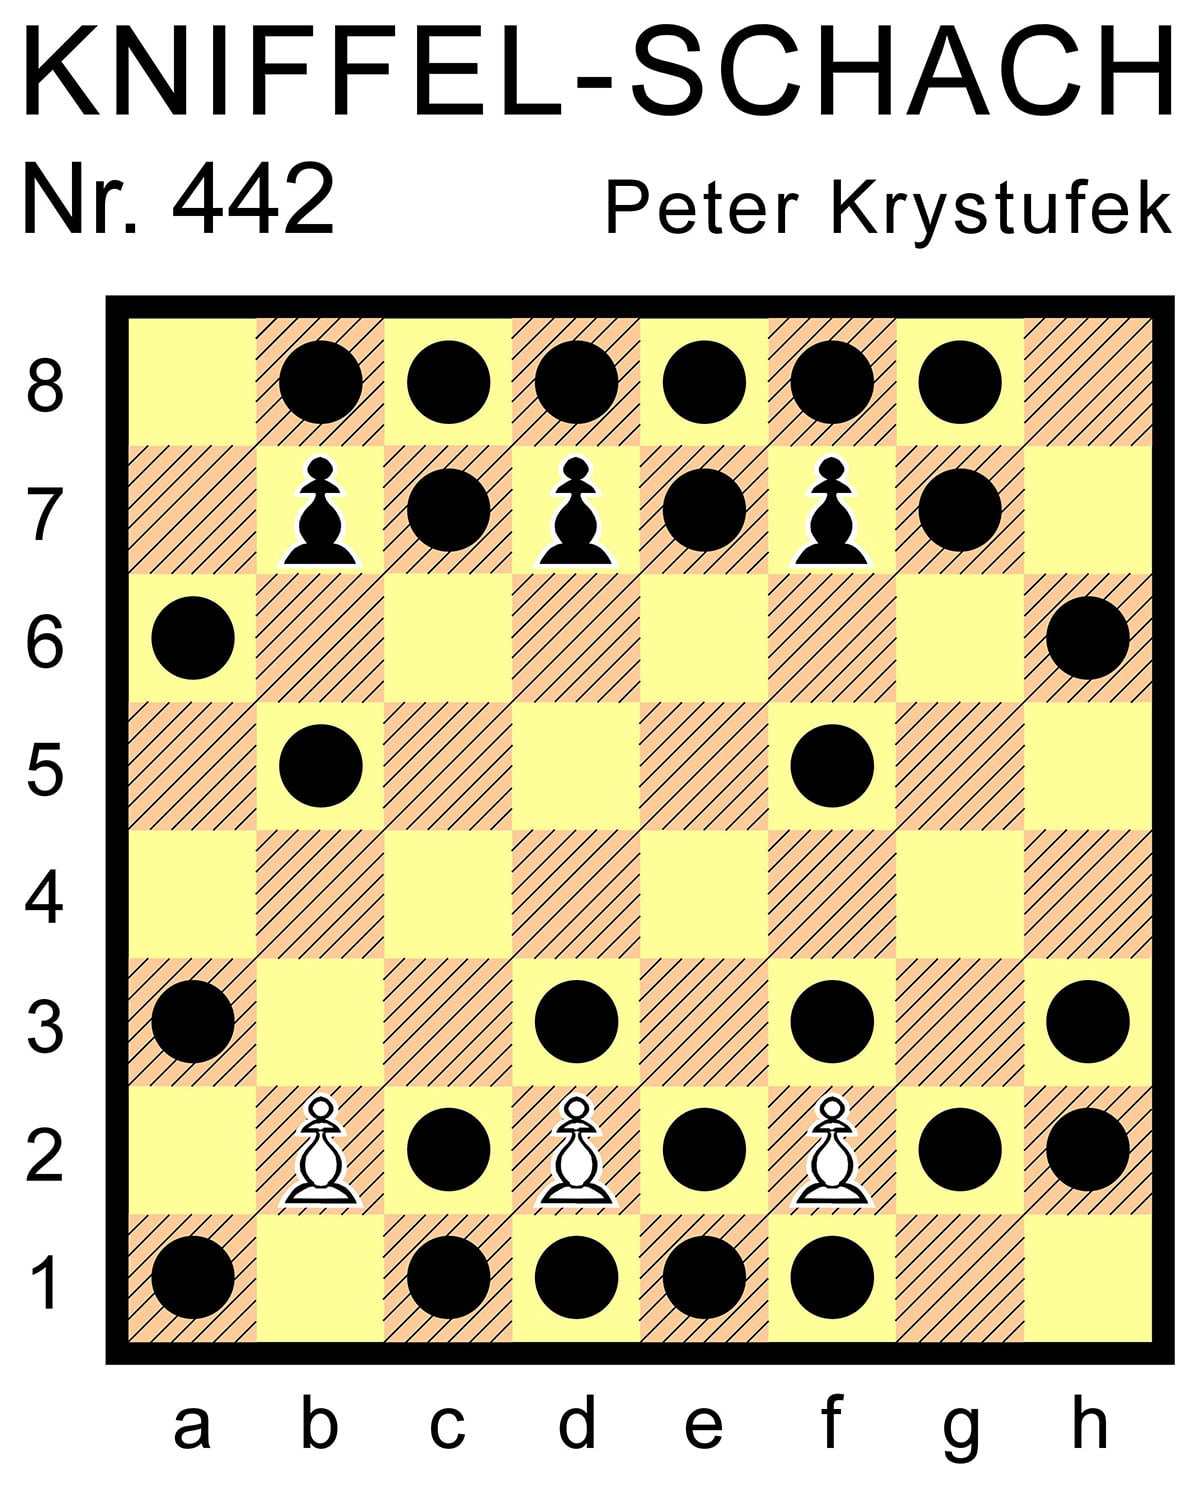 Kniffel-Schach Nr. 442